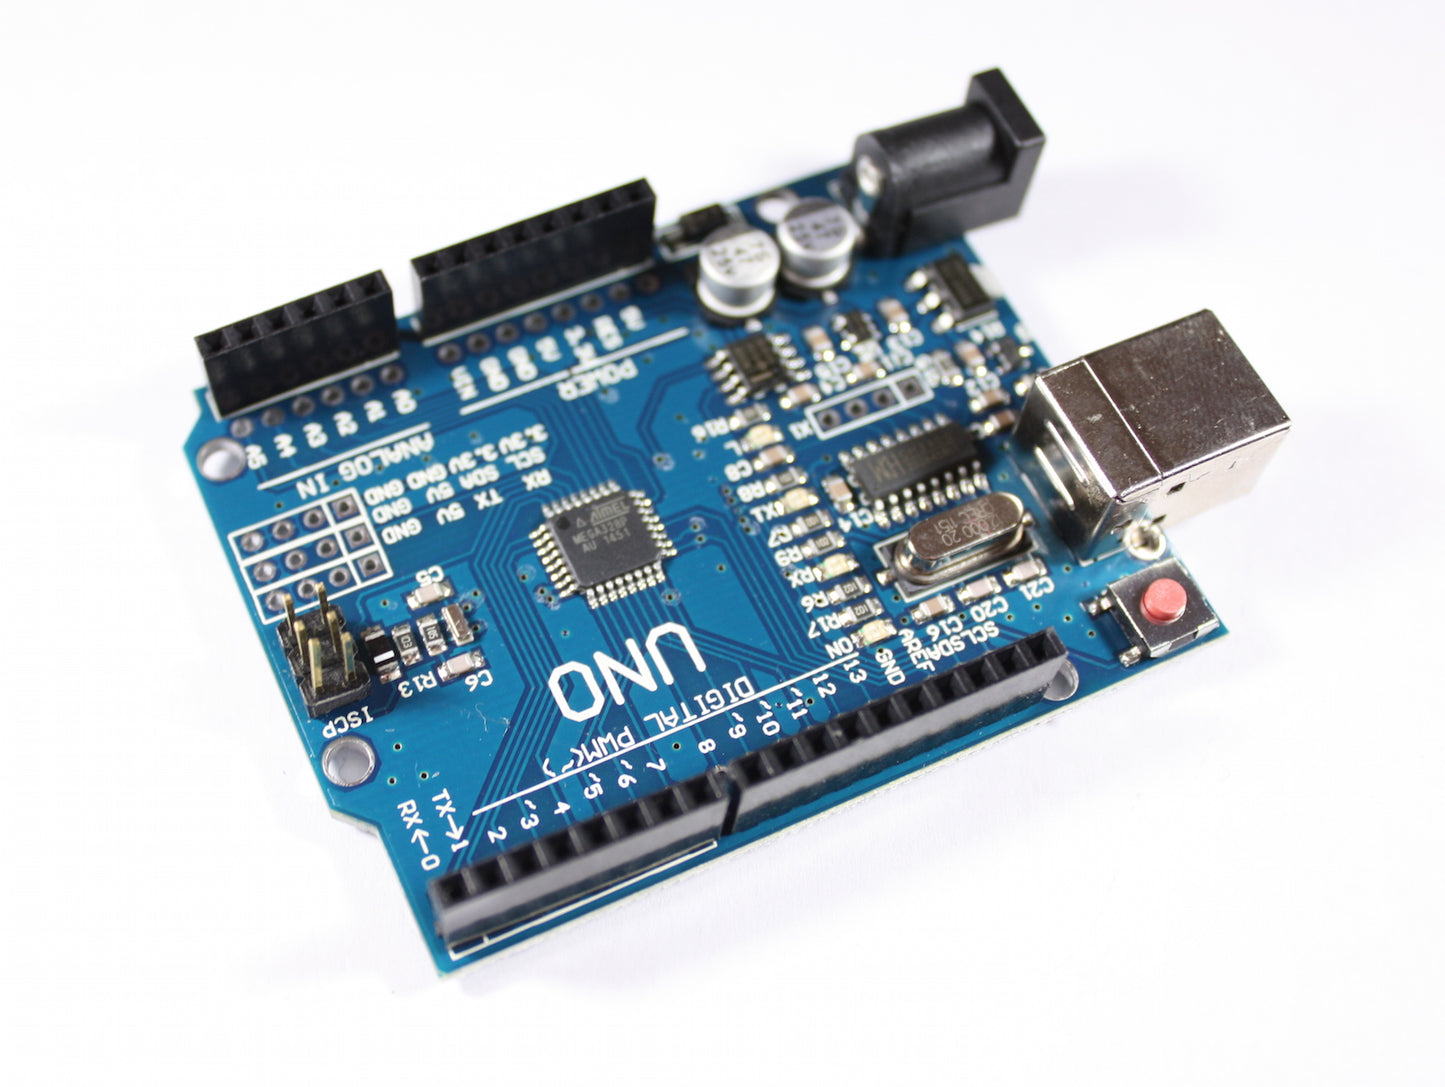 Uno SMD R3 Module with ATmega328P, 5V, 16MHz, Arduino Uno compatible